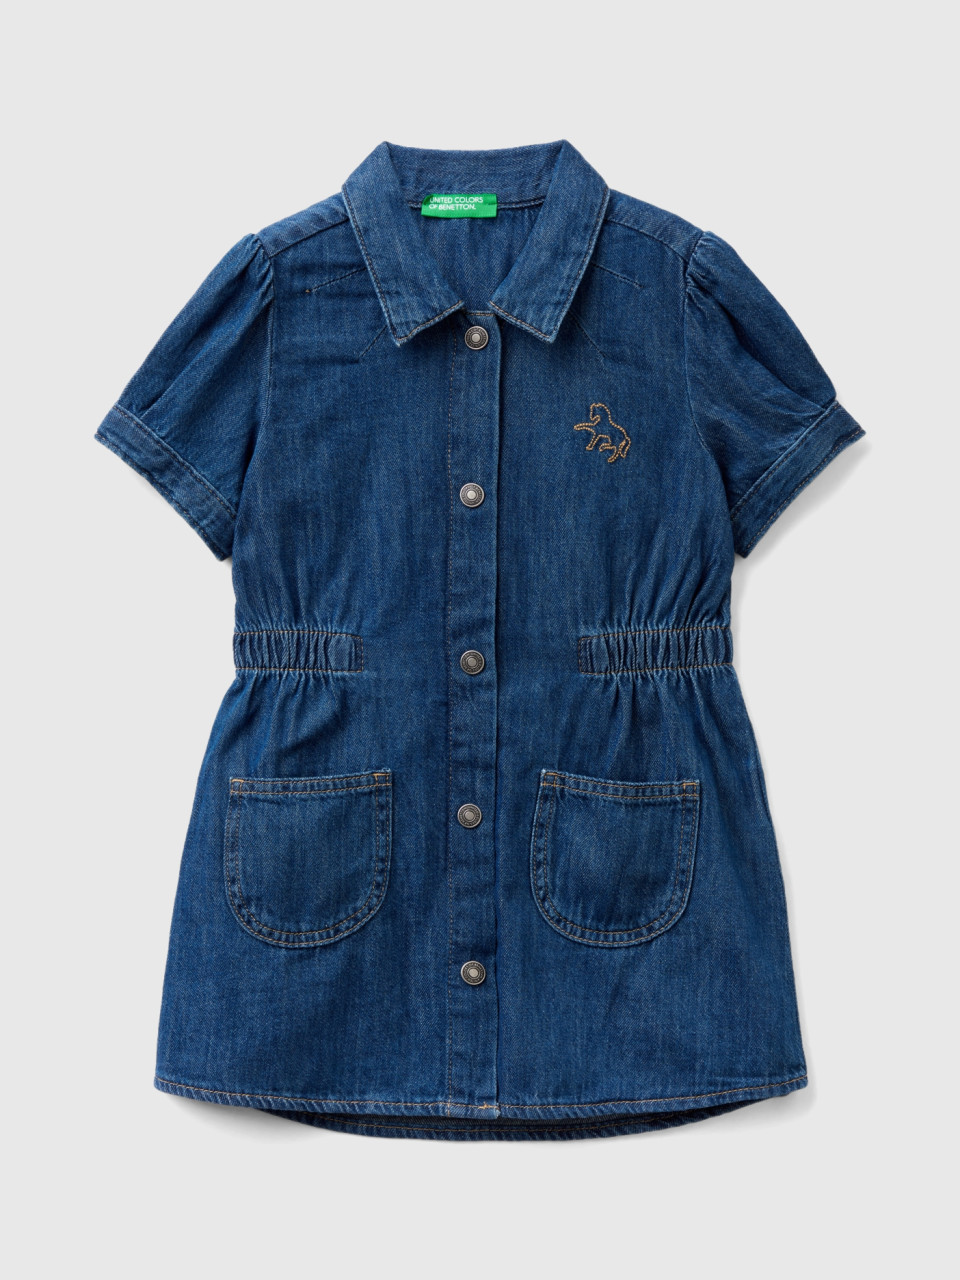 Benetton, Denim Shirt Dress With Collar, Blue, Kids